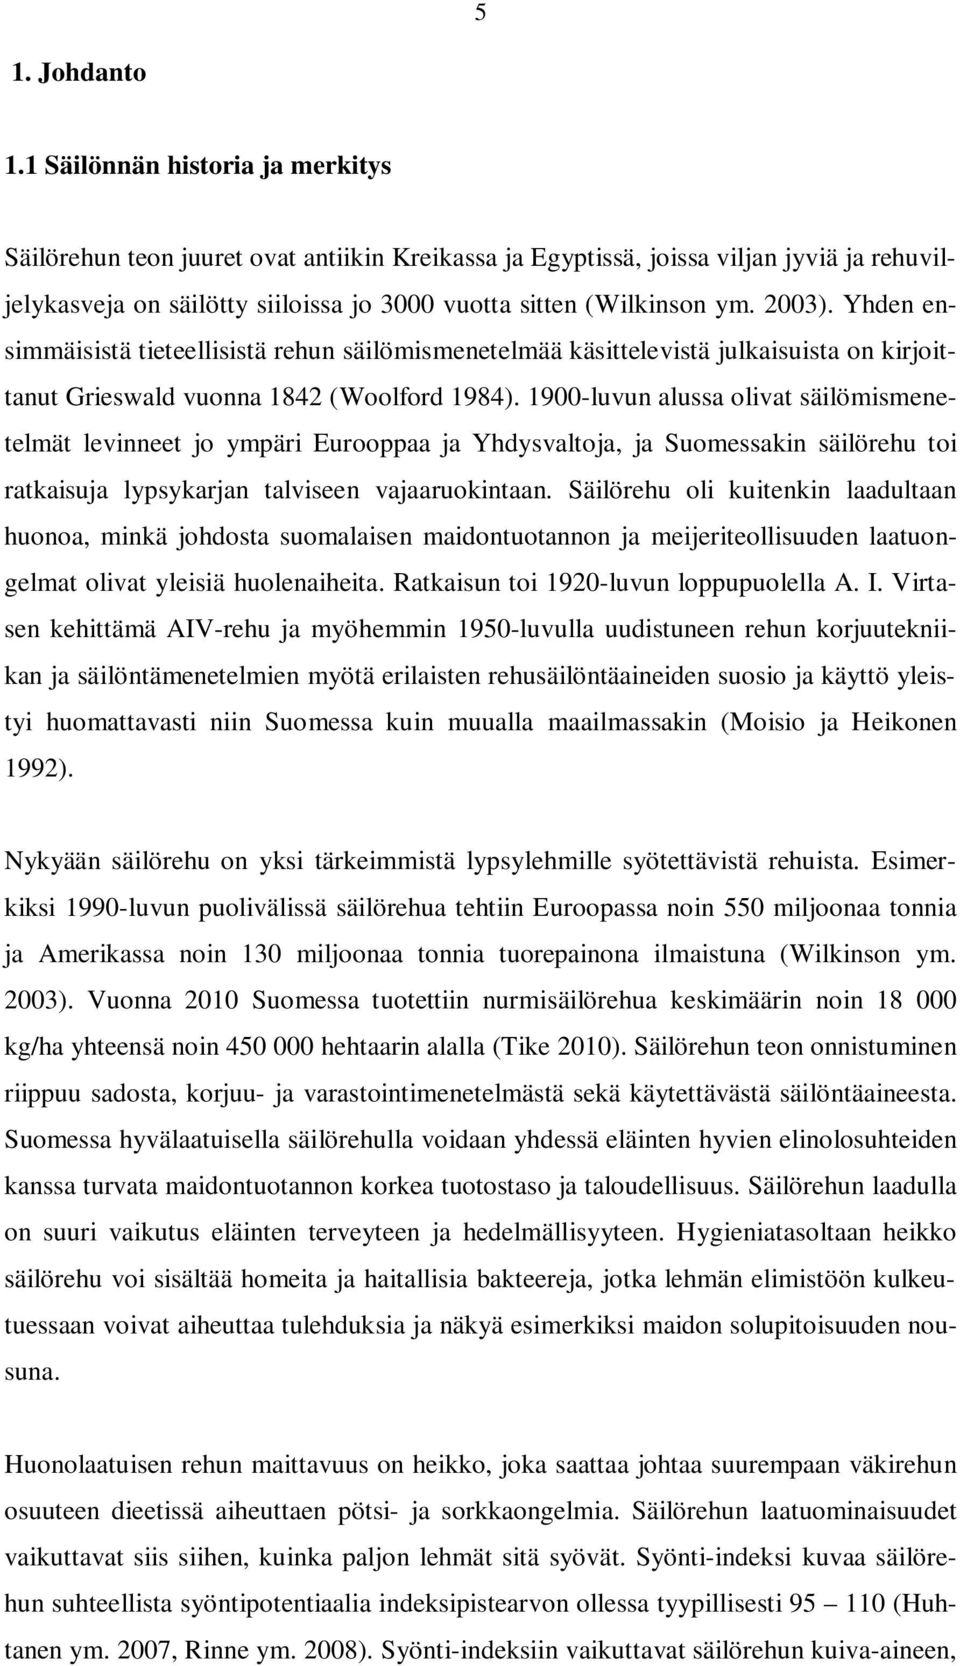 2003). Yhden ensimmäisistä tieteellisistä rehun säilömismenetelmää käsittelevistä julkaisuista on kirjoittanut Grieswald vuonna 1842 (Woolford 1984).